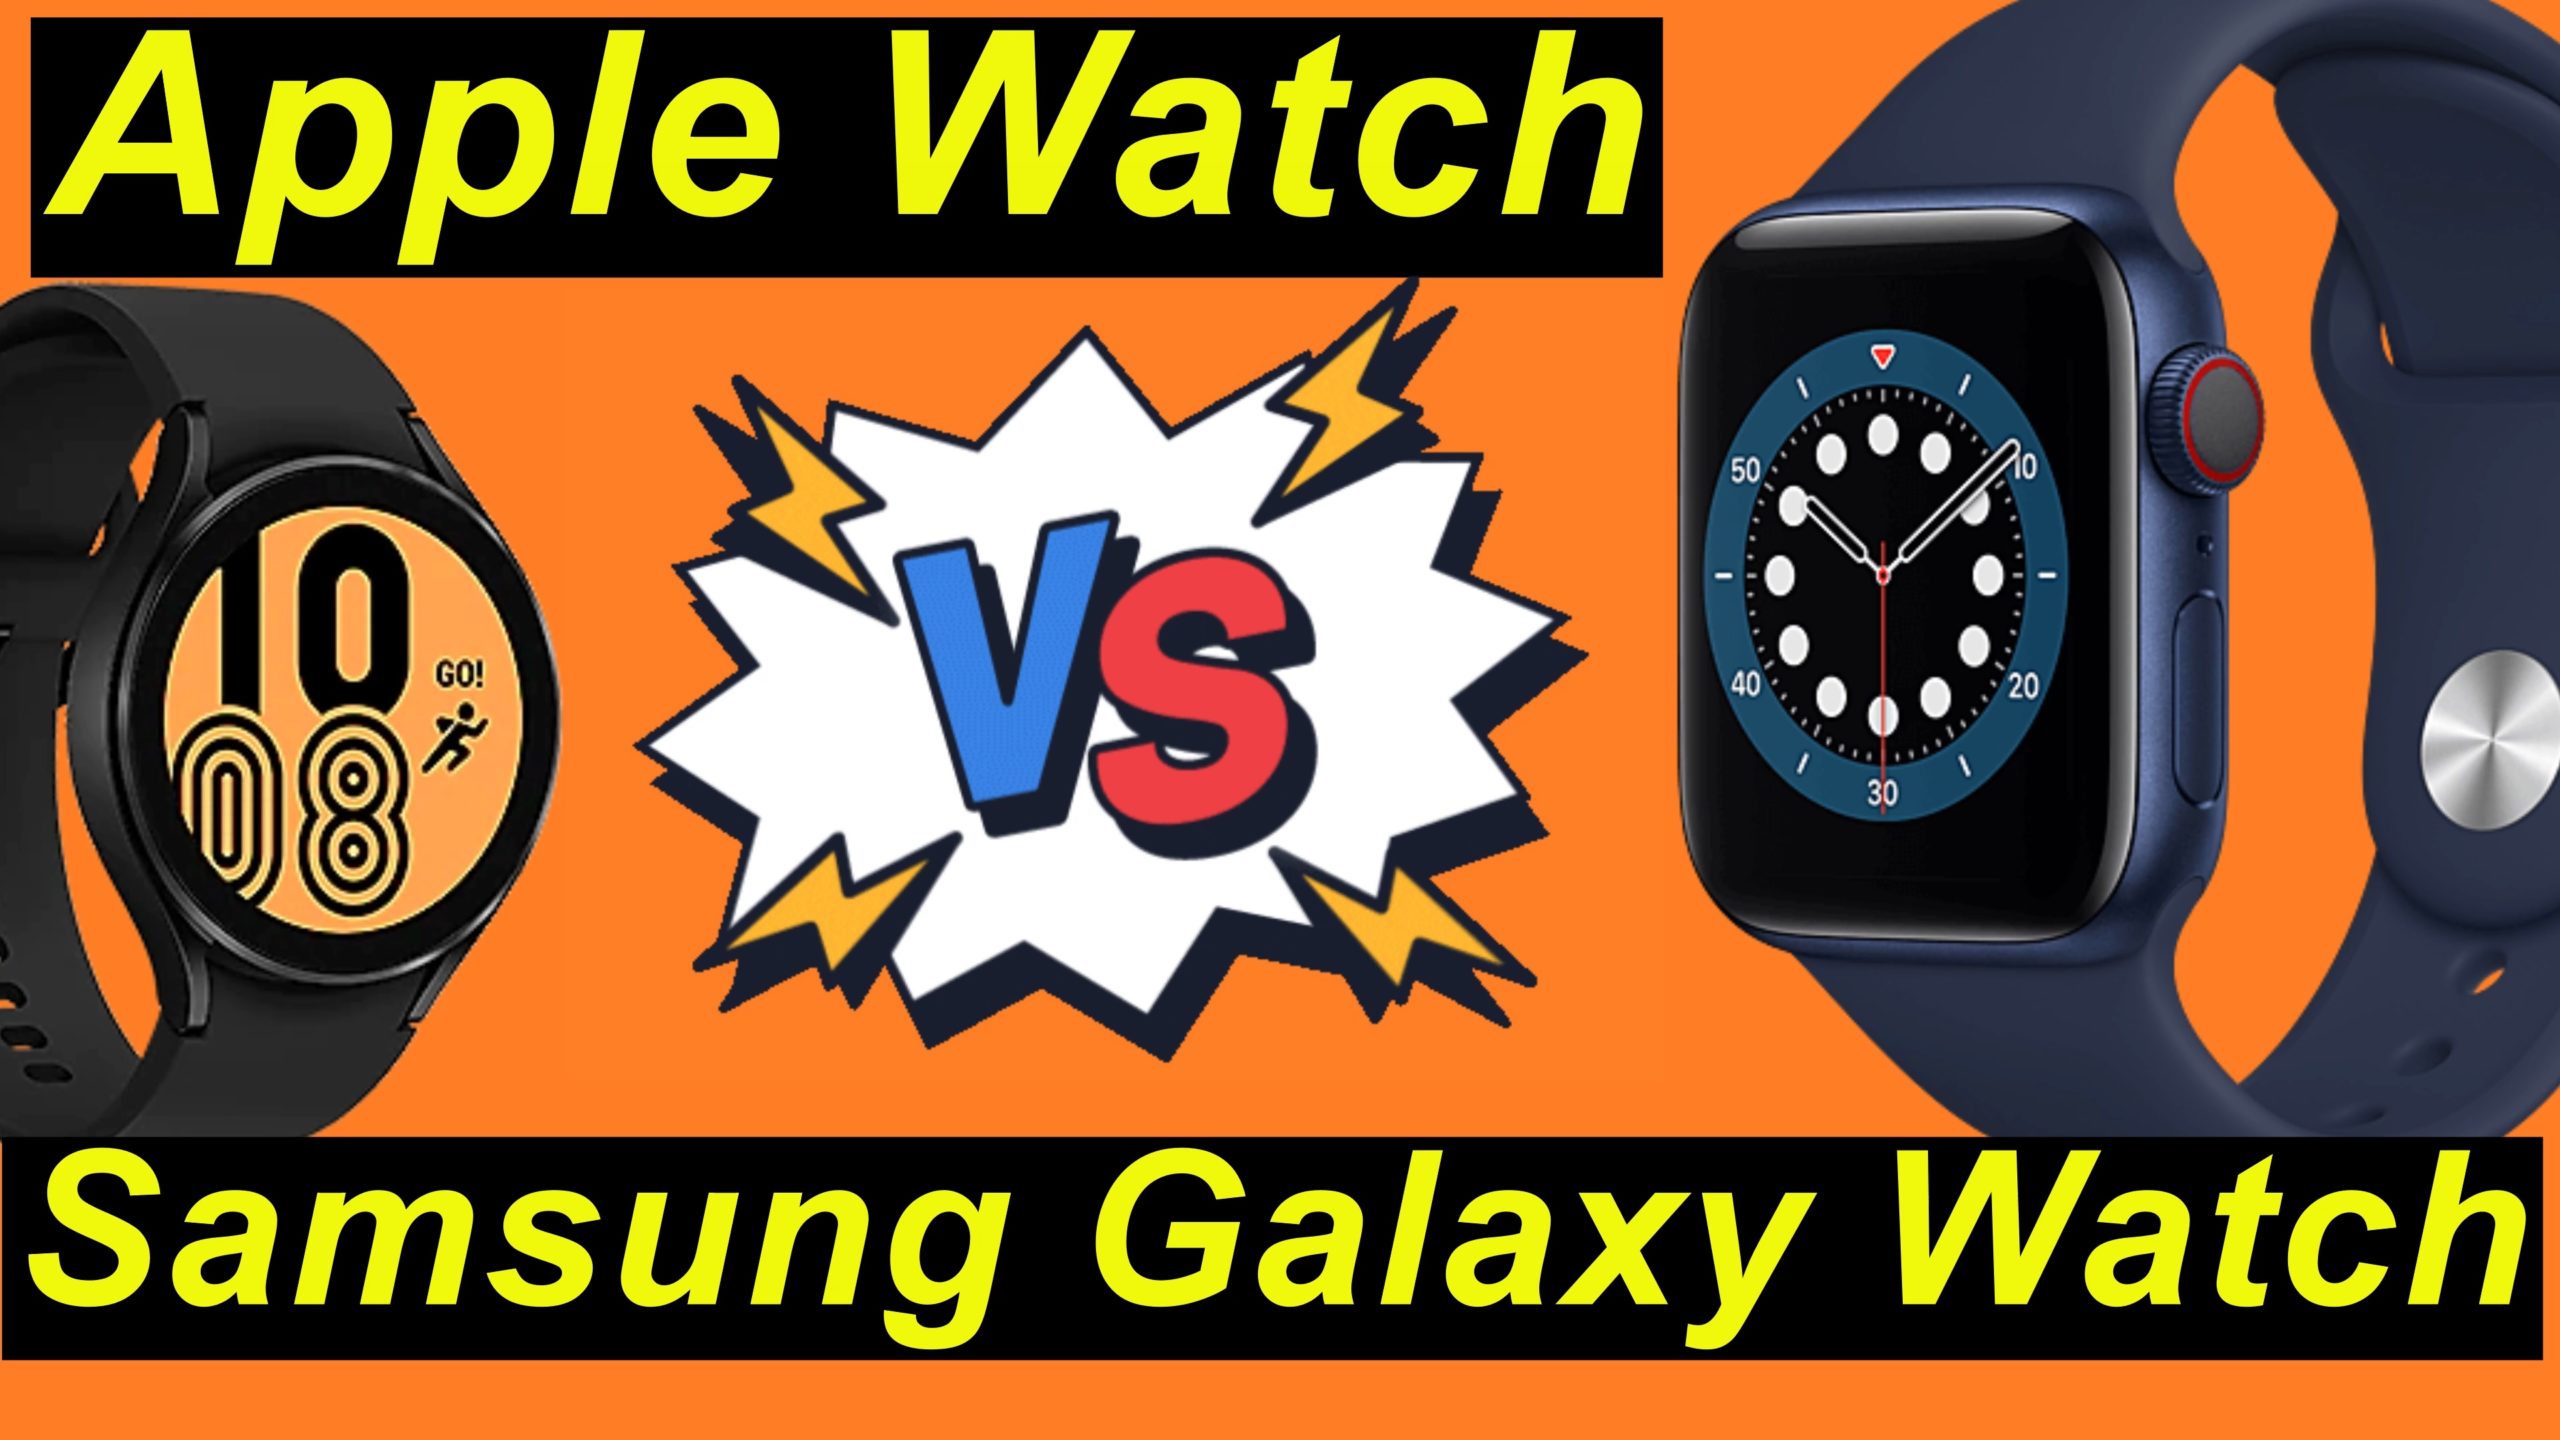 Apple Watch gegen Samsung Galaxy Watch. Welche Smartwatch denn nun?